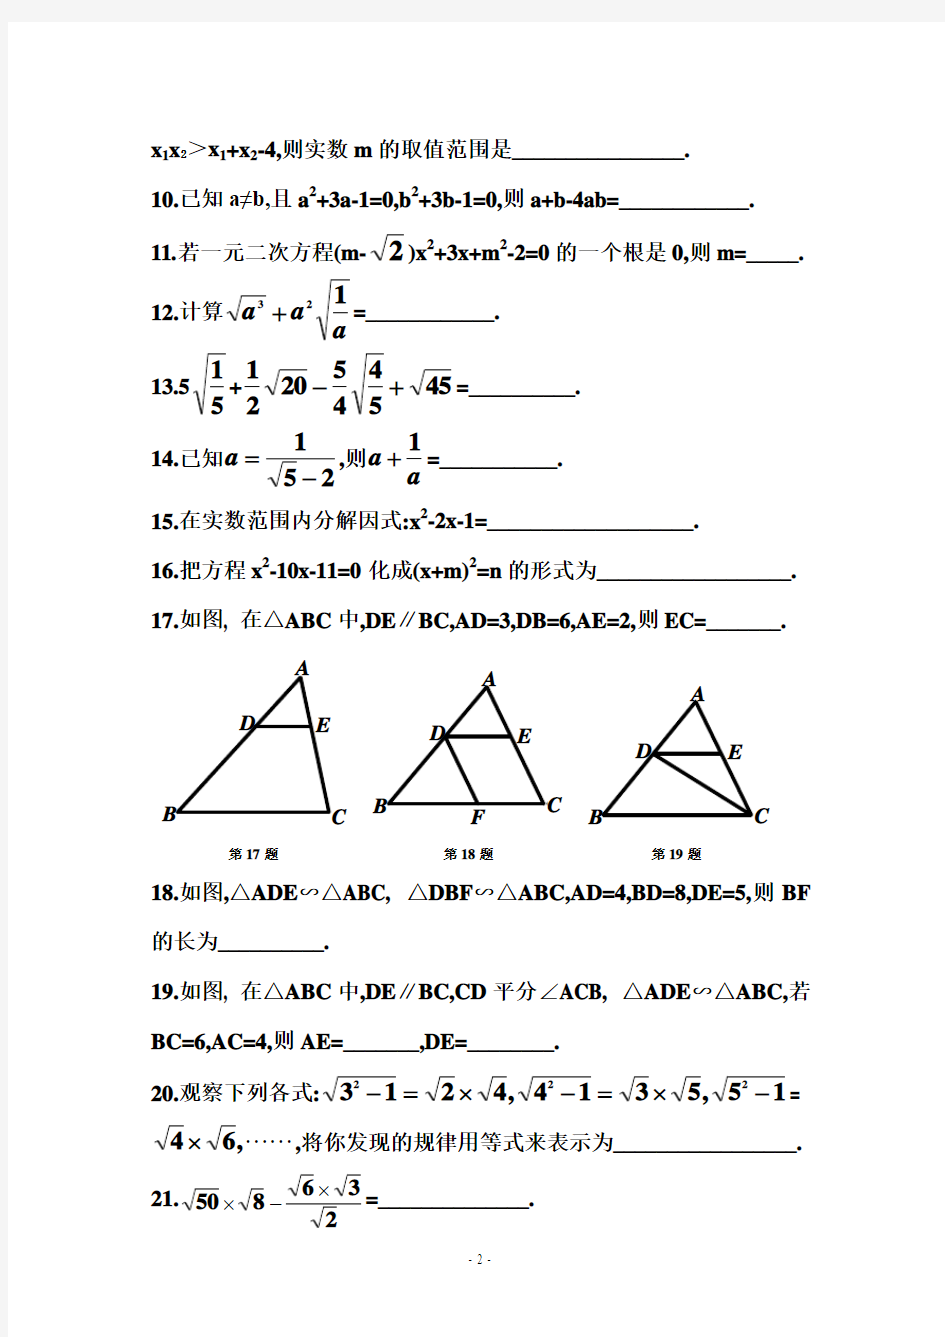 二次根式、一元二次方程与相似三角形练习题